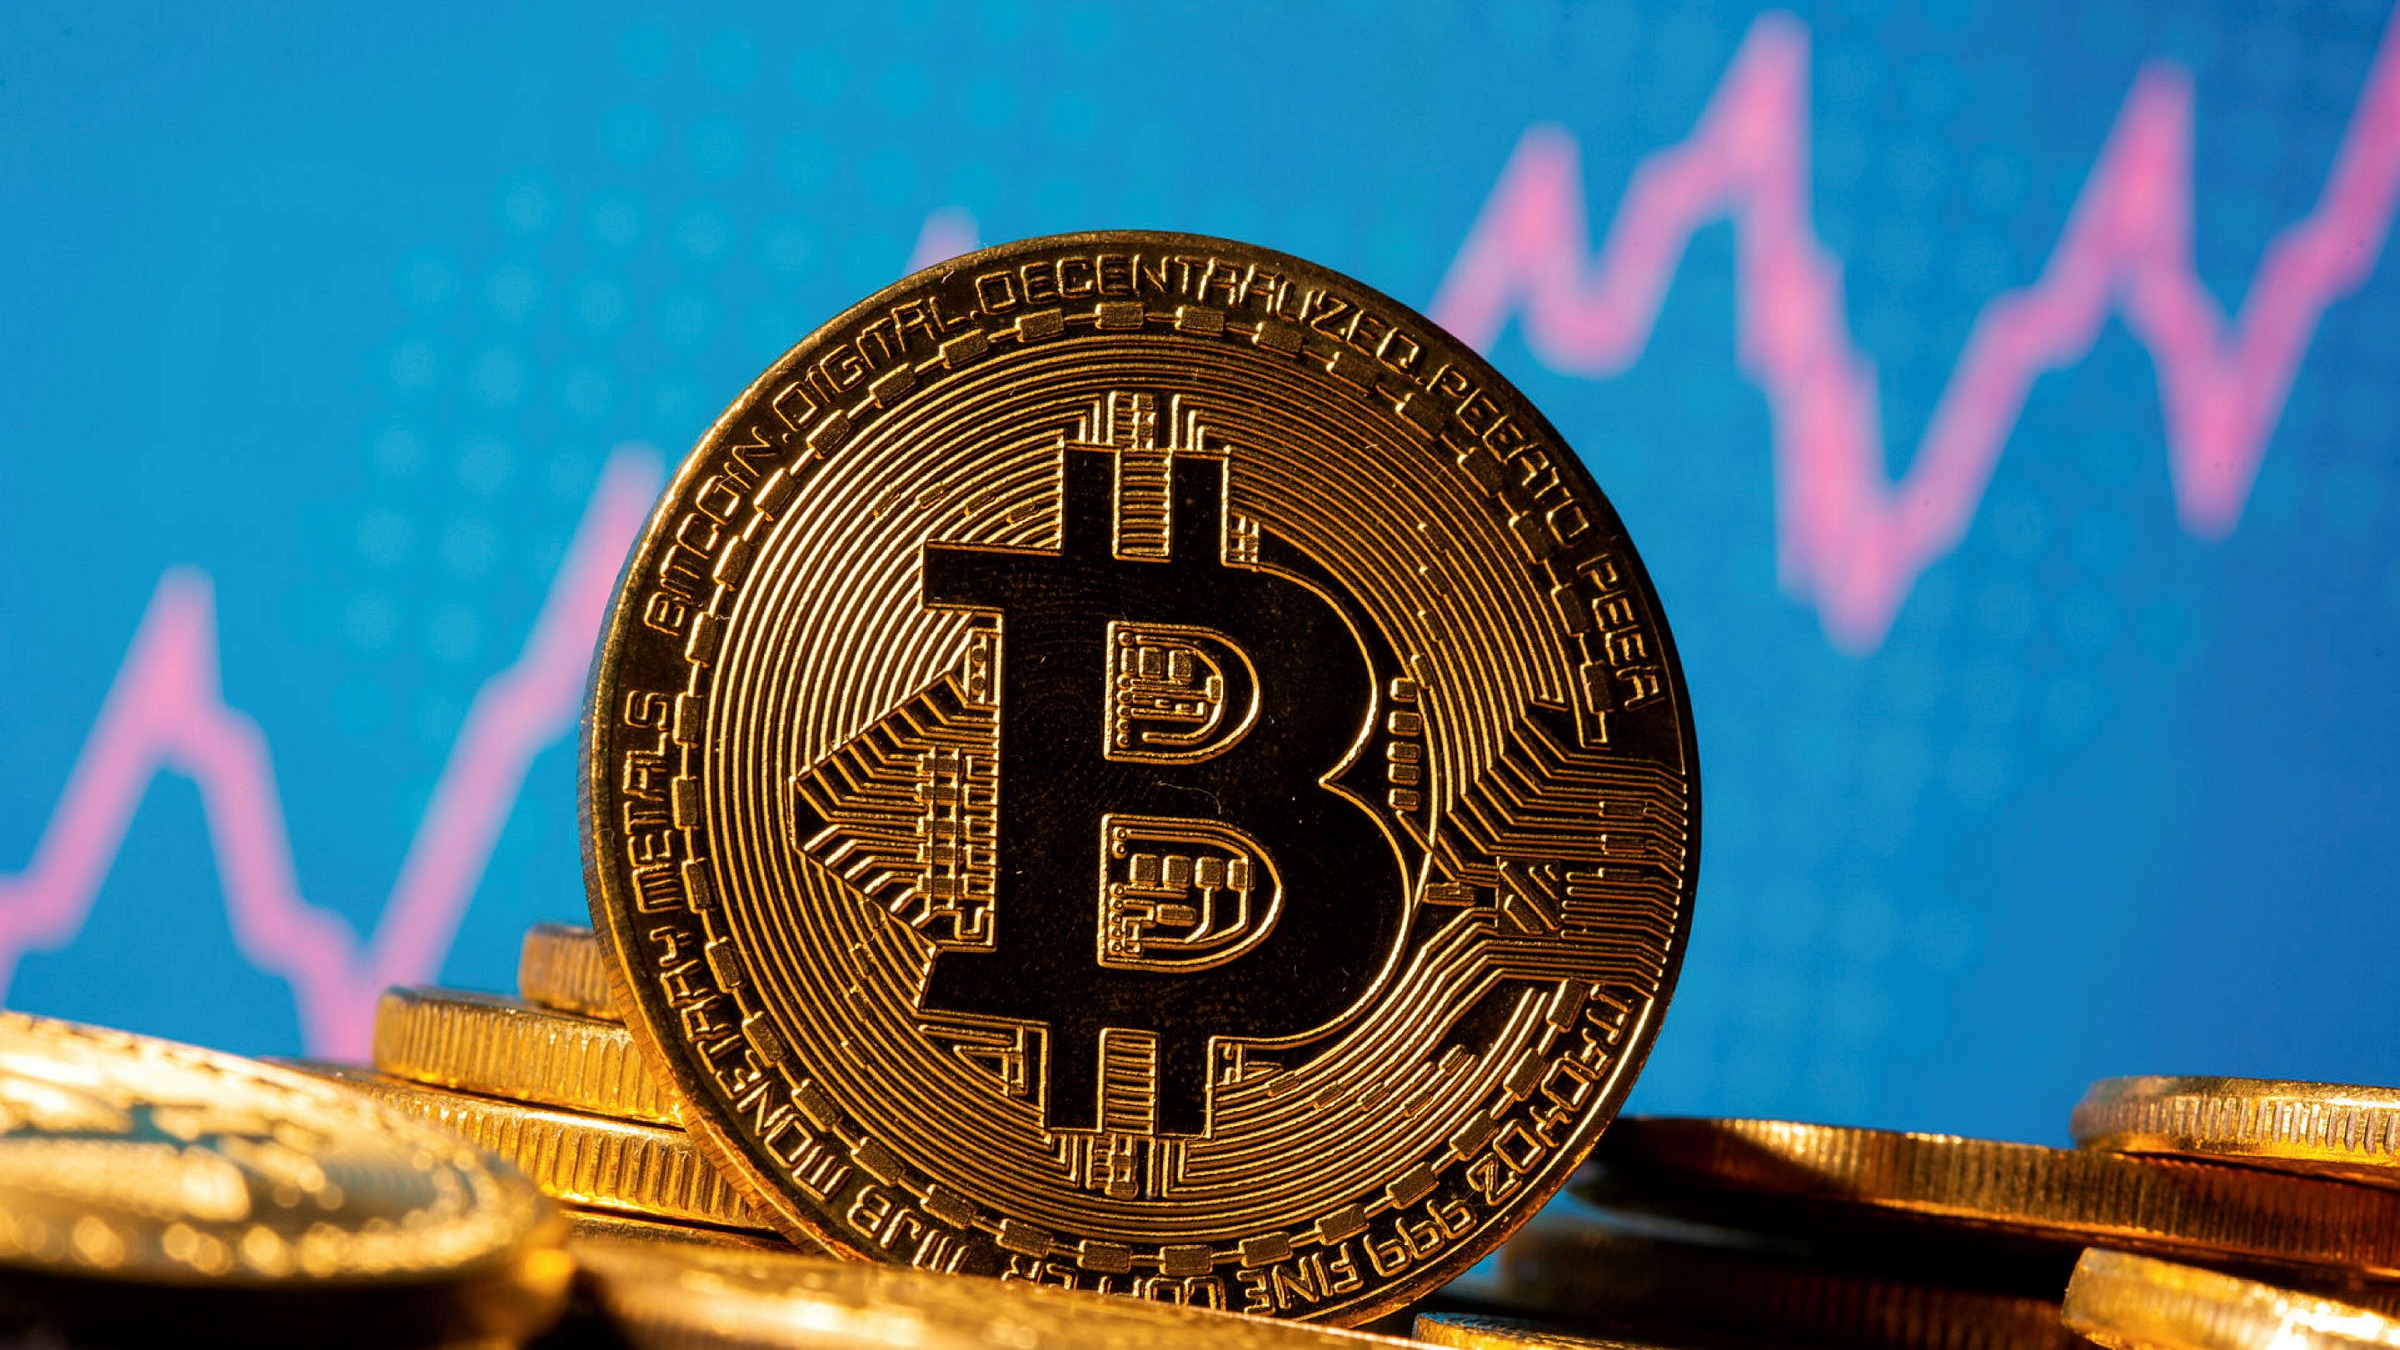 Bitcoin rallies as crypto markets rebound